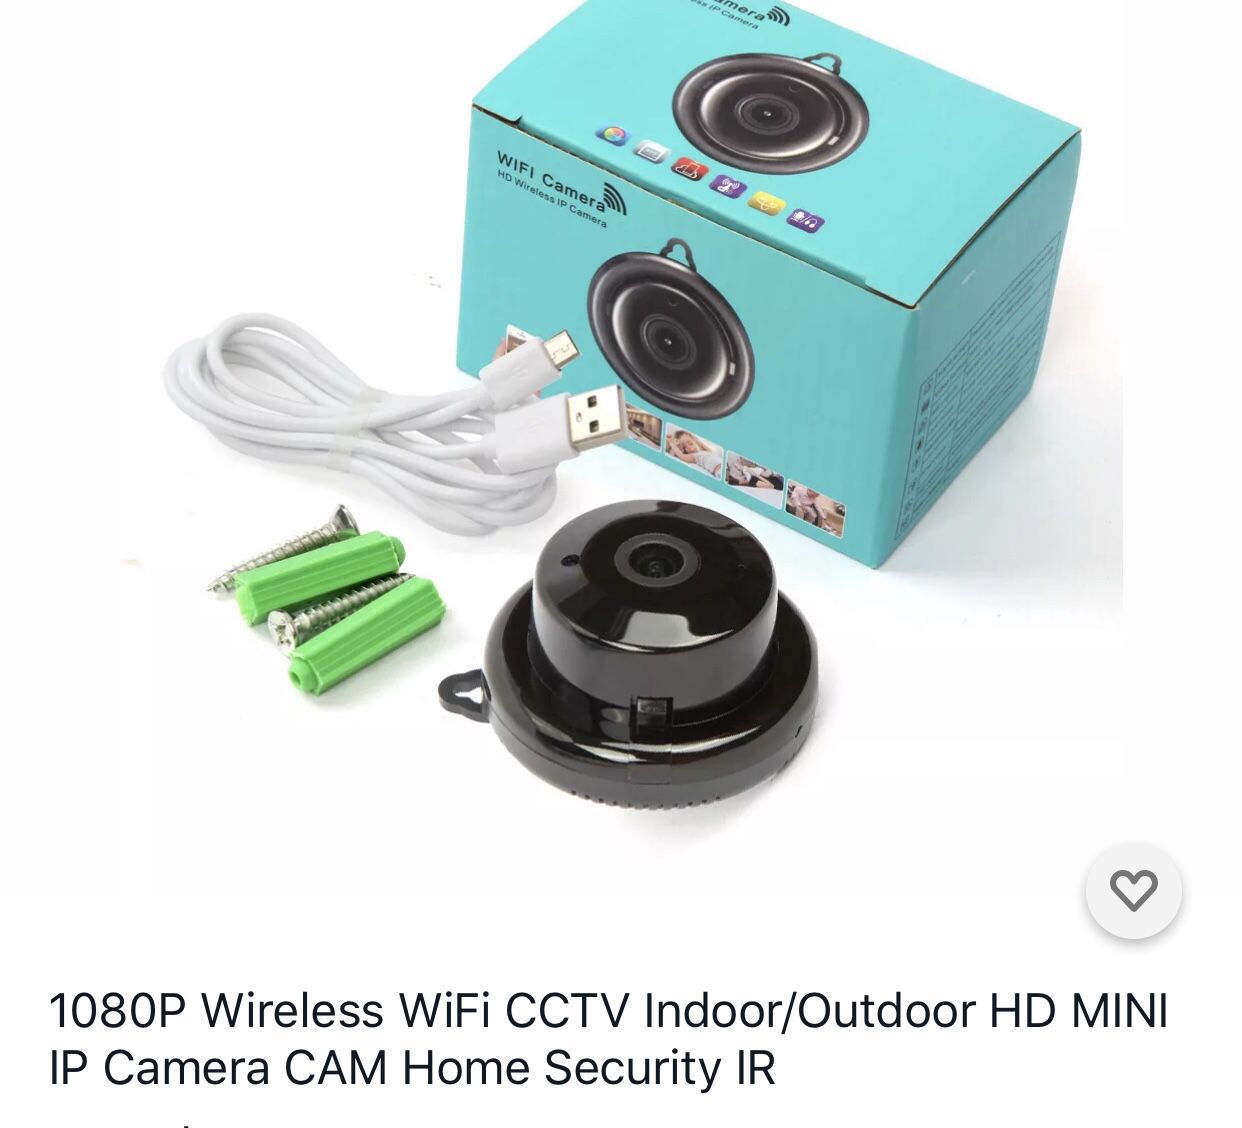 1080P indoor/outdoor CCTV